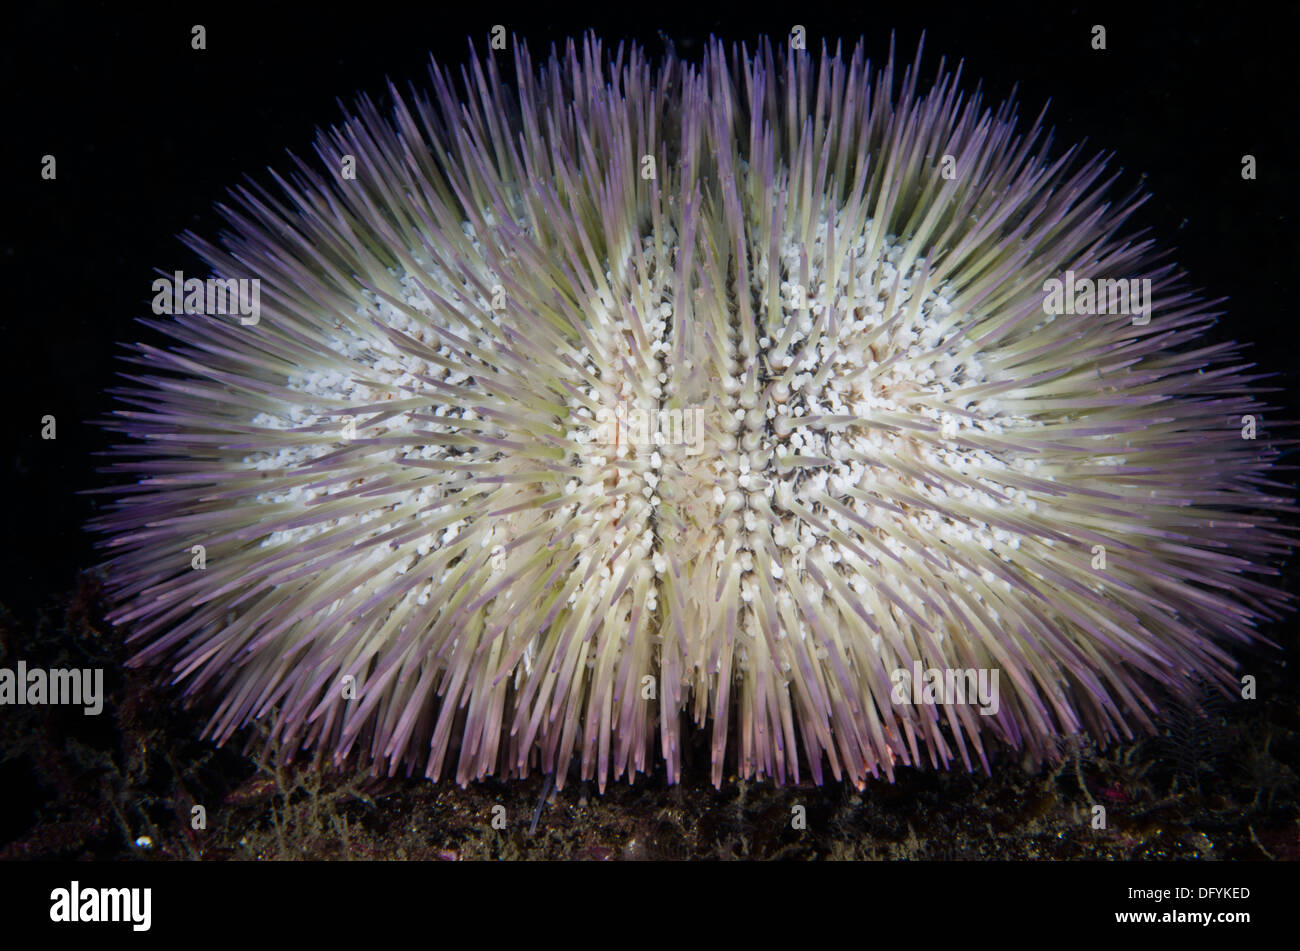 Lytechinus variegatus Sea Urchin underwater Stock Photo